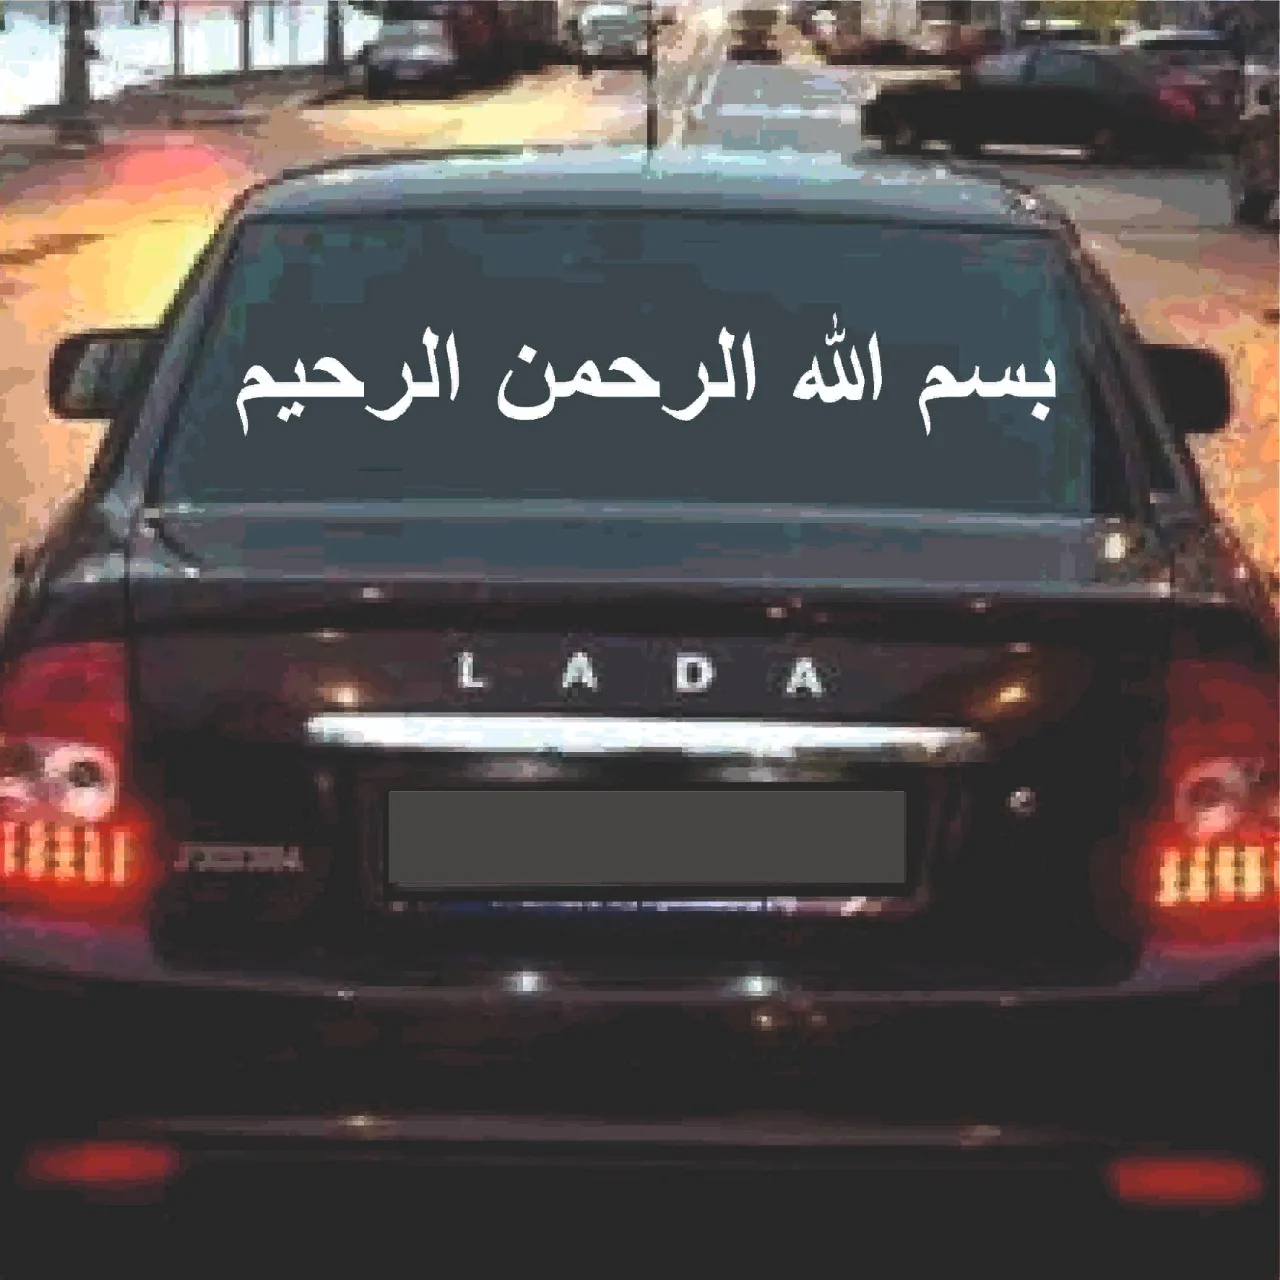 Наклейки на арабском на машину. Арабские наклейки на машину. На арабском языке на машину наклейки.